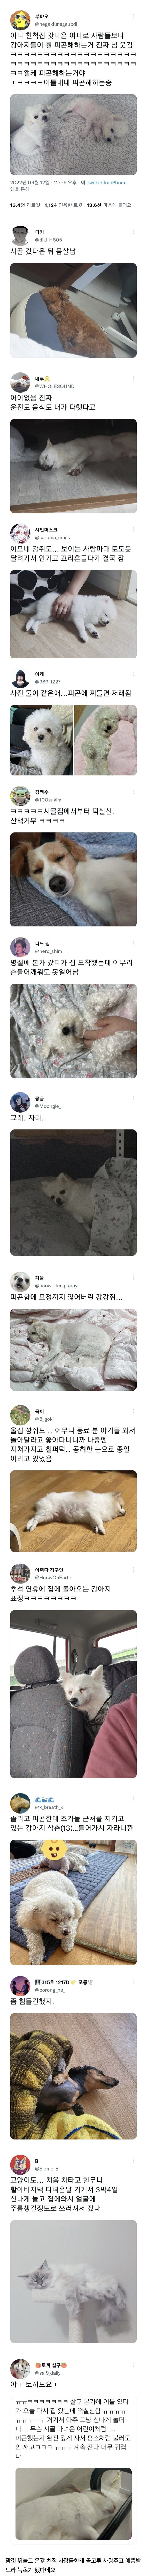 nokbeon.net-명절 여파를 온몸으로 받은 반려동물들-1번 이미지